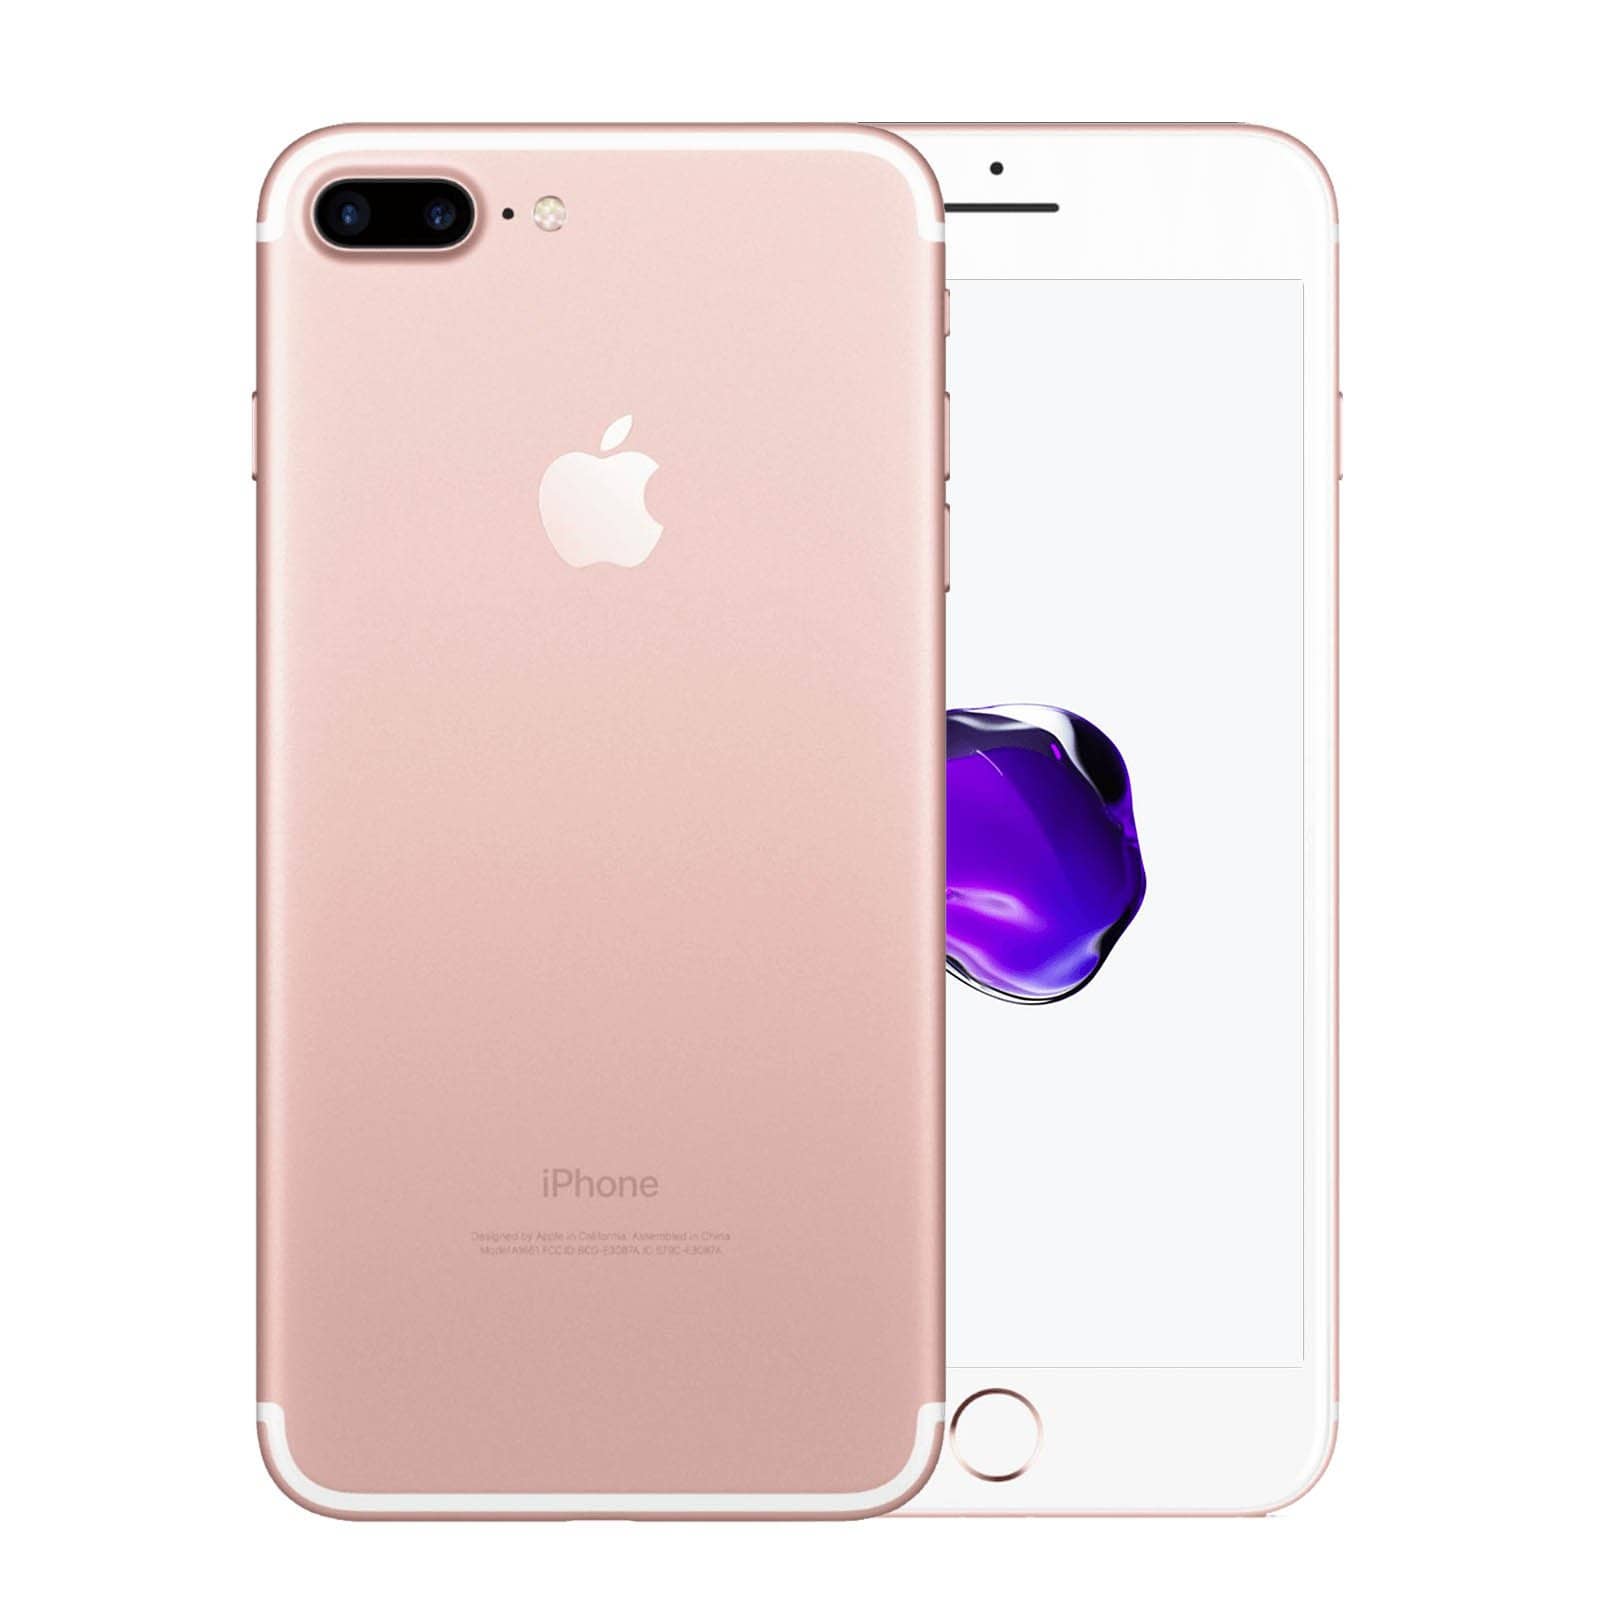 Apple iPhone 7 Plus 32GB Rose Gold Fair - Unlocked 32GB Rose Gold Fair